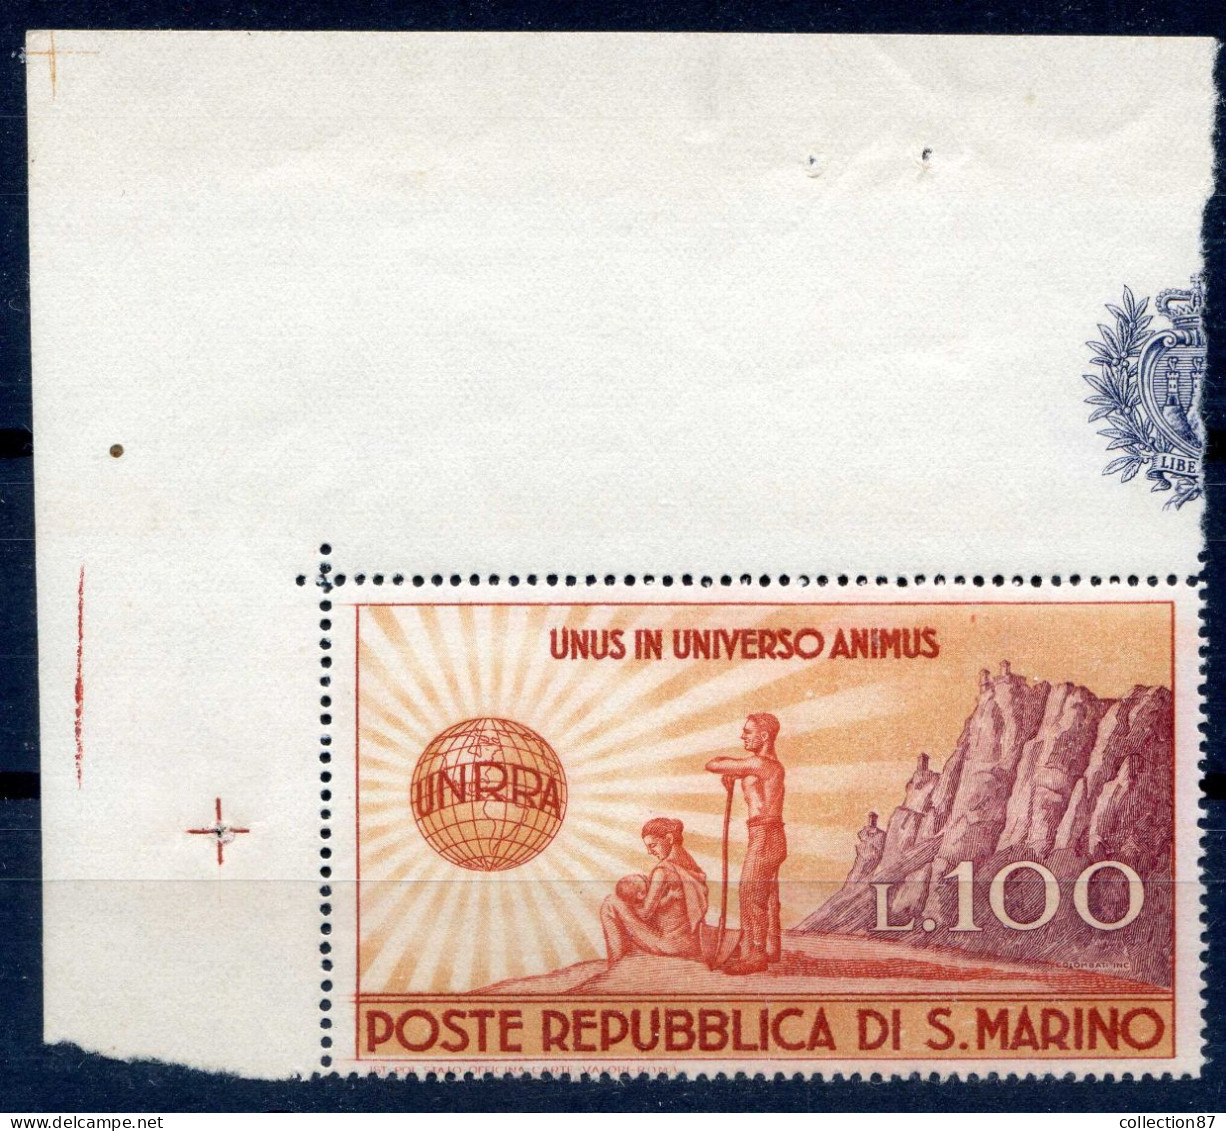 REF 001 > SAINT MARIN < Yvert N° 278 * * Neuf Luxe - MNH * * - S. MARINO < Cote 20 € - Unused Stamps